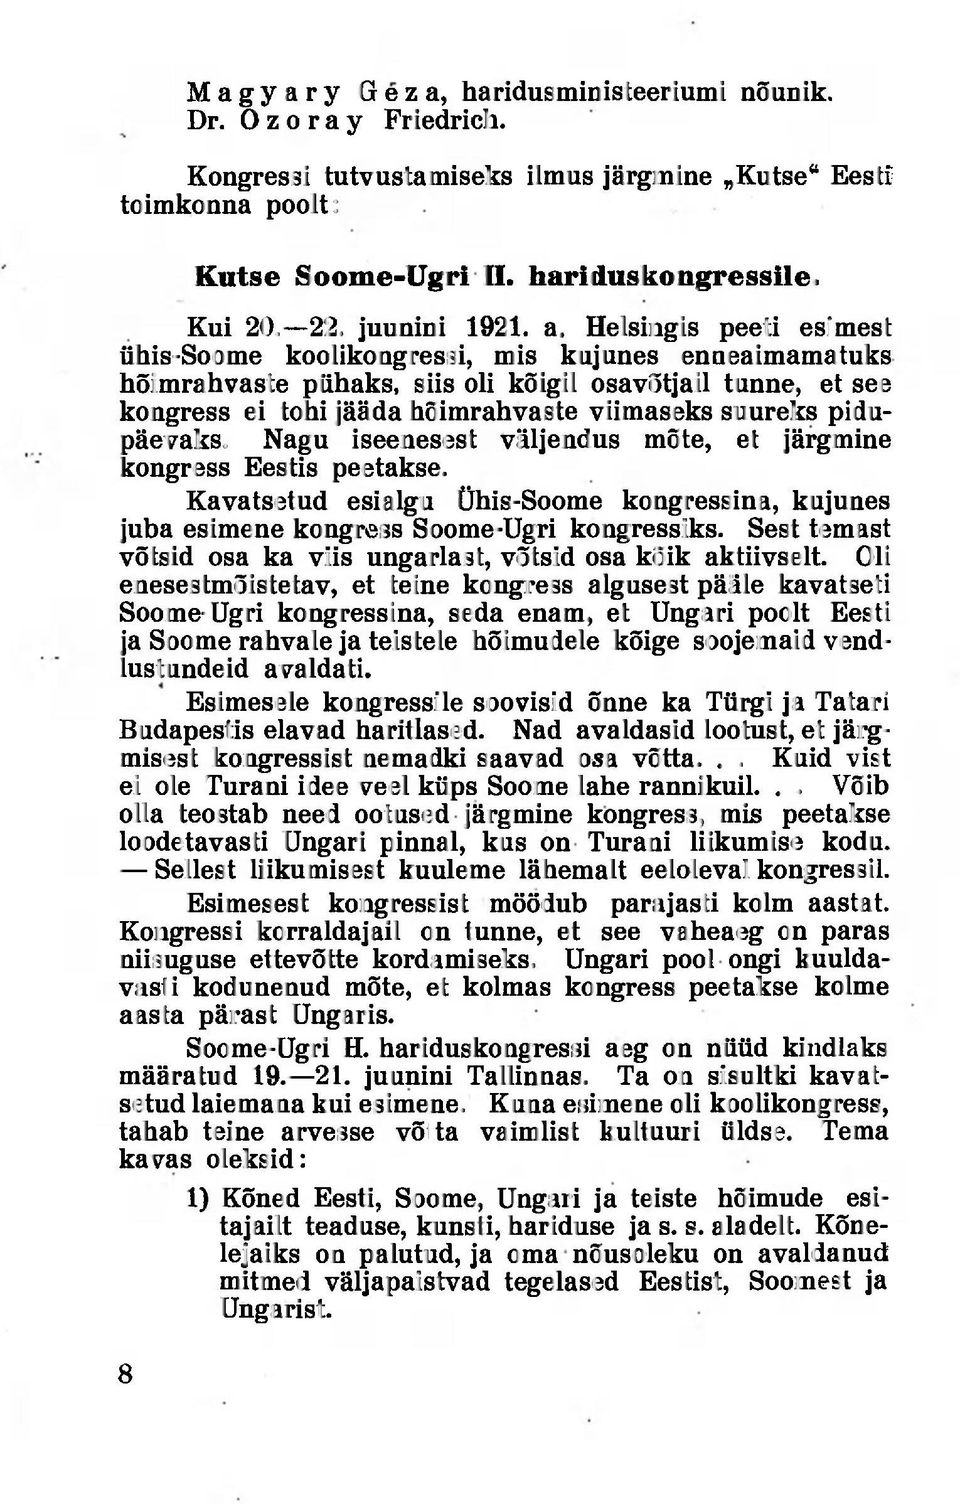 Helsingis peeti esimest ühis-soome koolikongressi, mis kujunes enaeaimamatuks hõimrahvaste pühaks, siis oli kõigil osavõtjail tunne, et see kongress ei tohi jääda hõimrahvaste viimaseks suureks